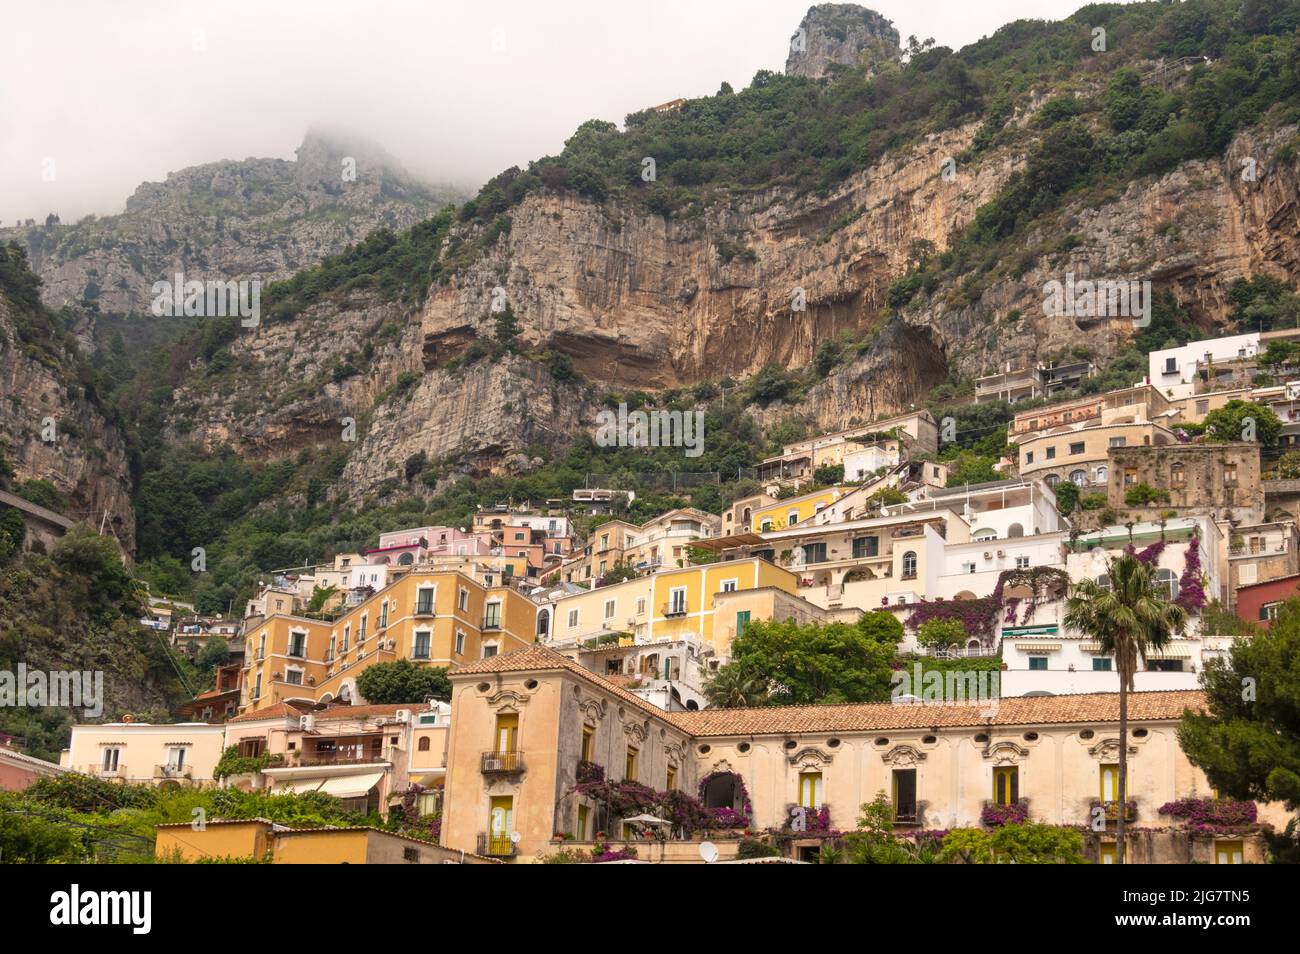 El pueblo de Positano en la costa de Amalfi, provincia de Salerno, Campania, Italia Foto de stock